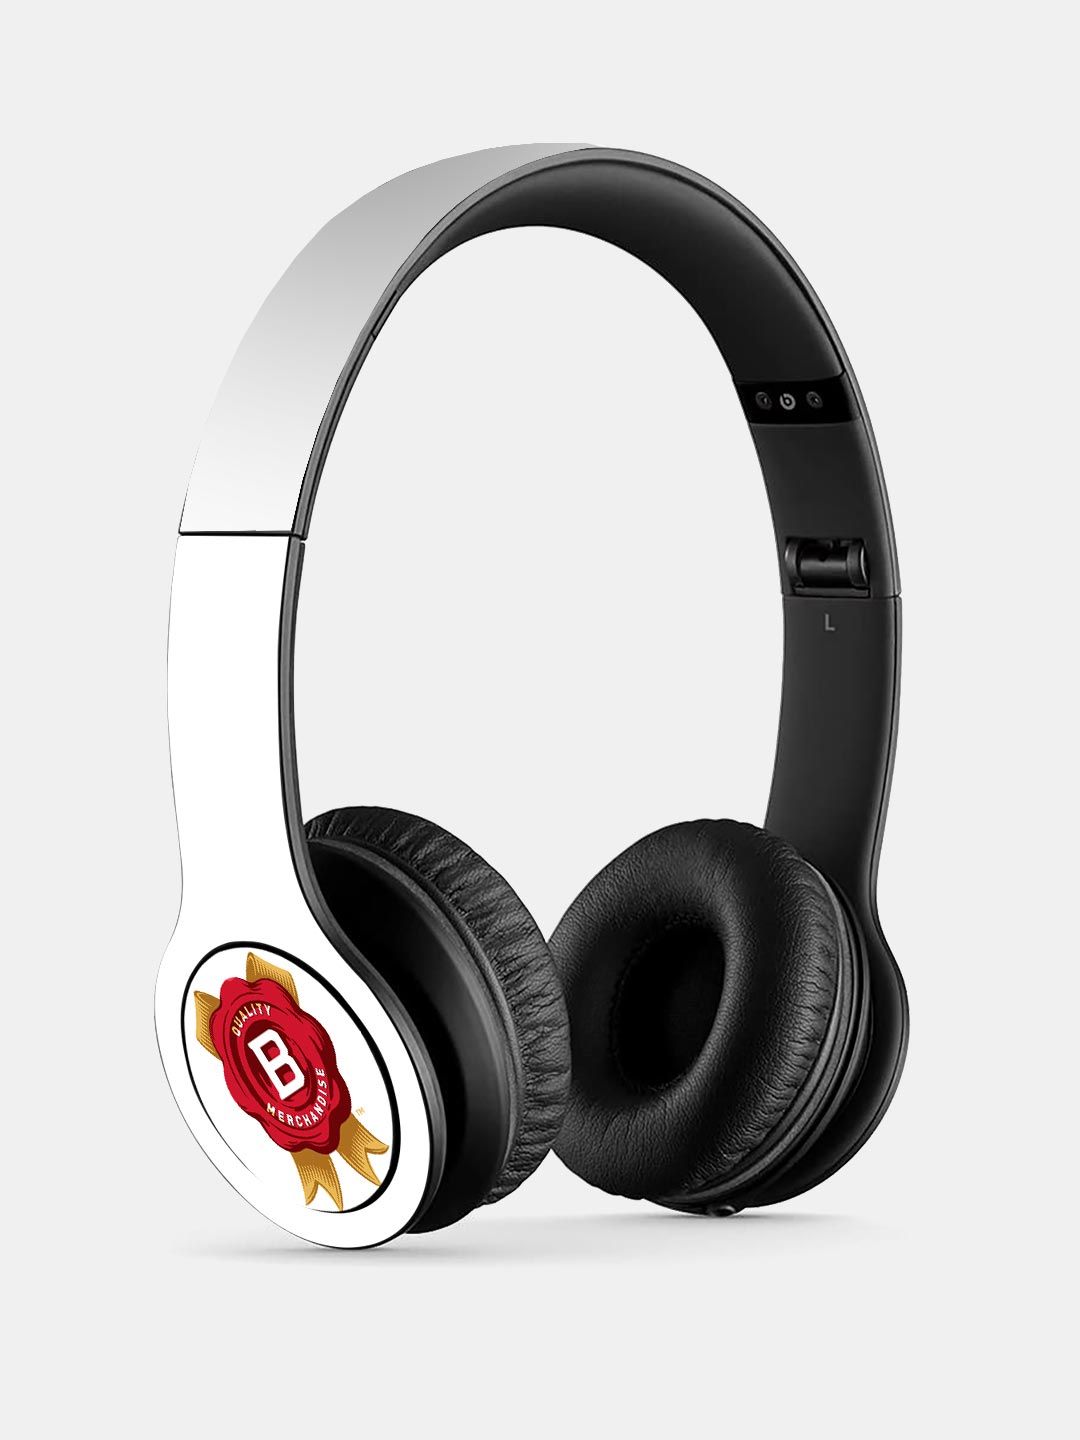 Buy Jim Beam Rosette White - P47 Wireless On Ear Headphones Headphones Online